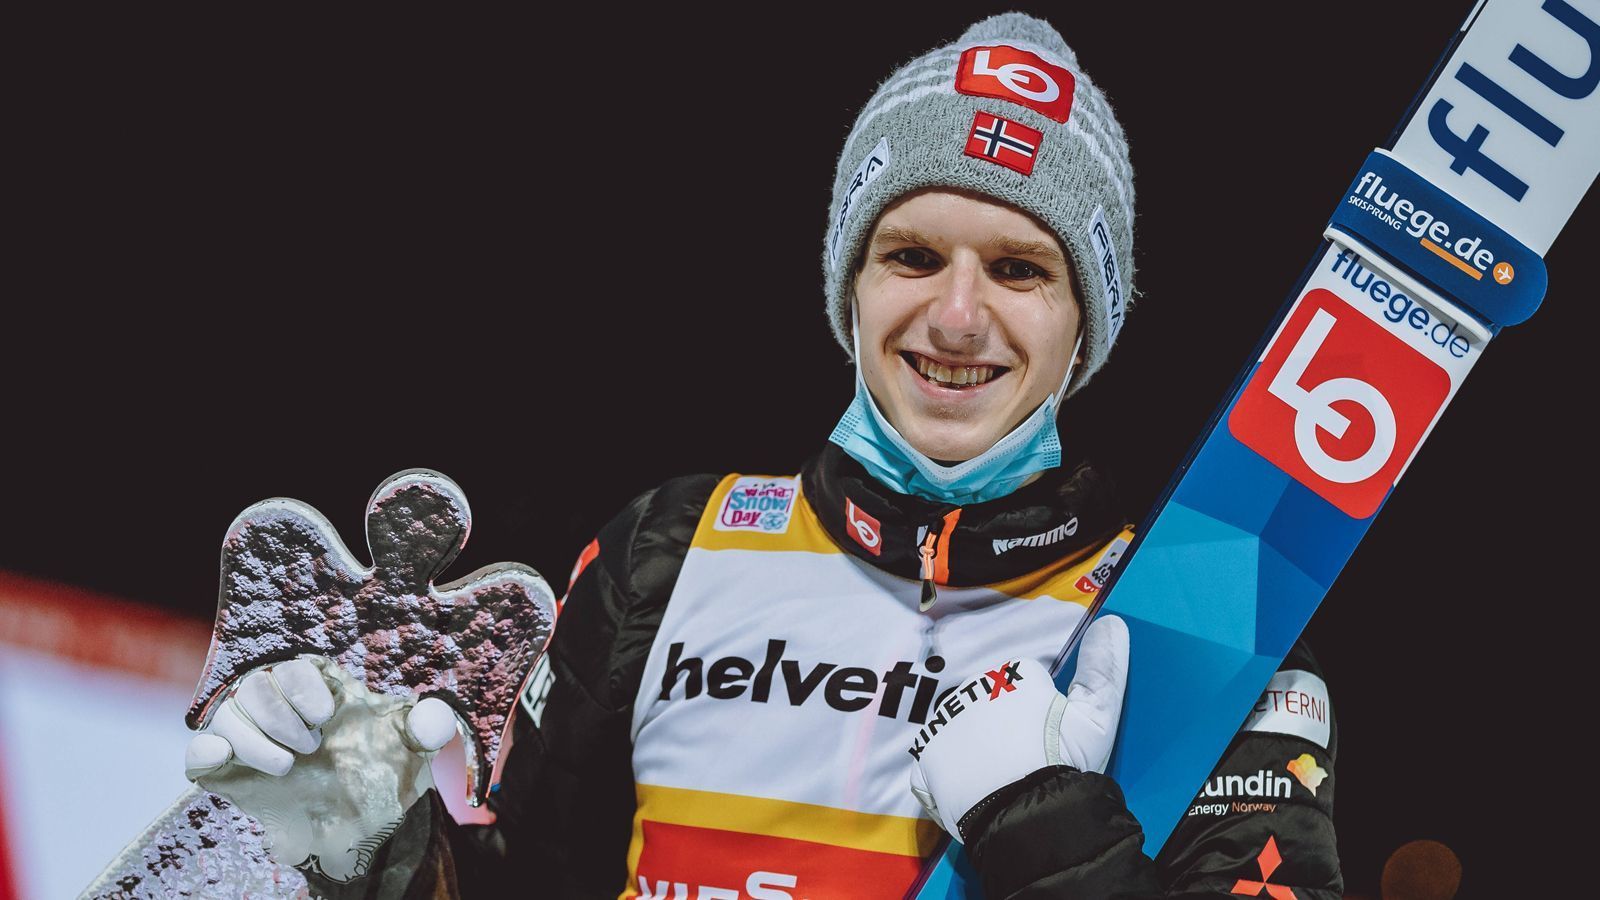 
                <strong>Halvor Egner Granerud</strong><br>
                Der 24-jährige Norweger ist der Top-Favorit der Vierschanzentournee. Granerud führt den Gesamtweltcup an, wurde in diesem Jahr Skiflug-Weltmeister im Team und Skiflug-Vizeweltmeister im Einzel. Bei der Vierschanzentournee spielte er bislang keine große Rolle. Nach fünf Weltcup-Siegen in Folge strotzt er nun aber vor Selbstvertrauen und dürfte schwer zu bezwingen sein.
              